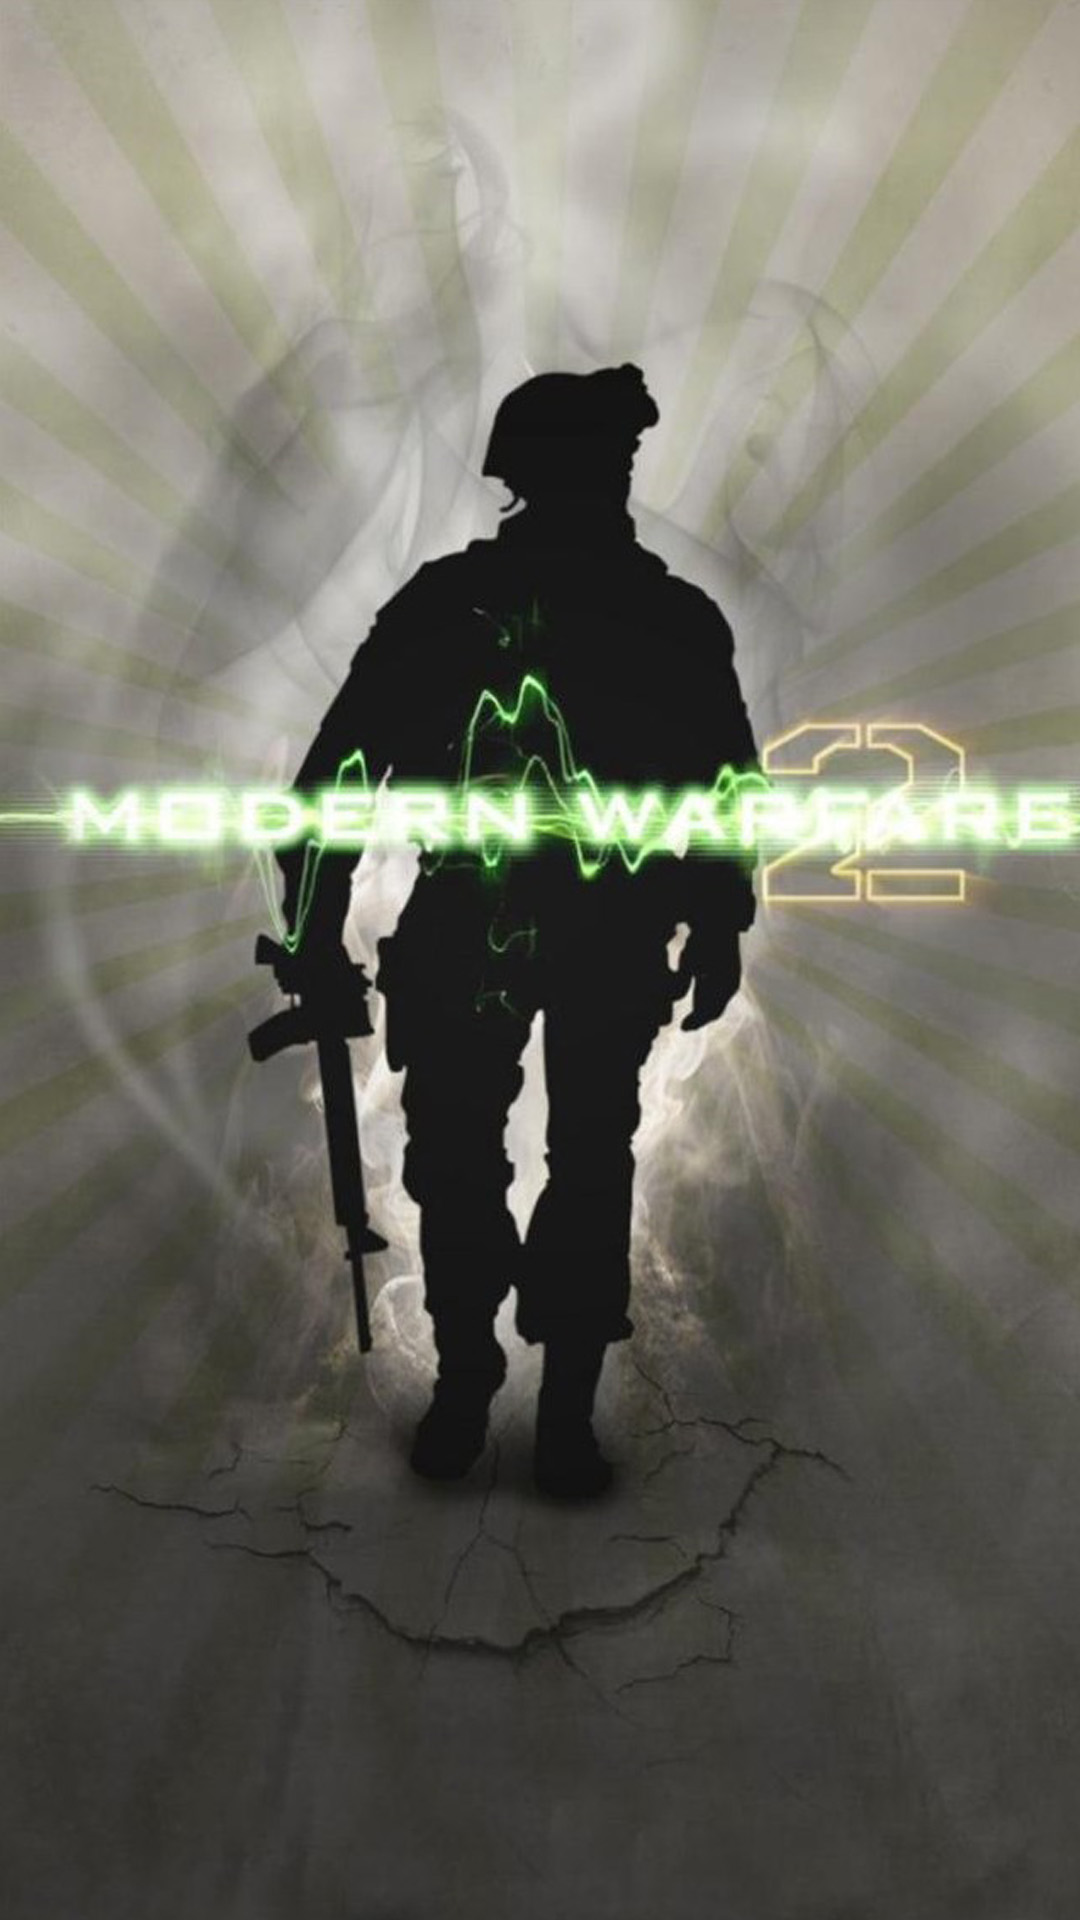 Modern Warfare 2 Soldier